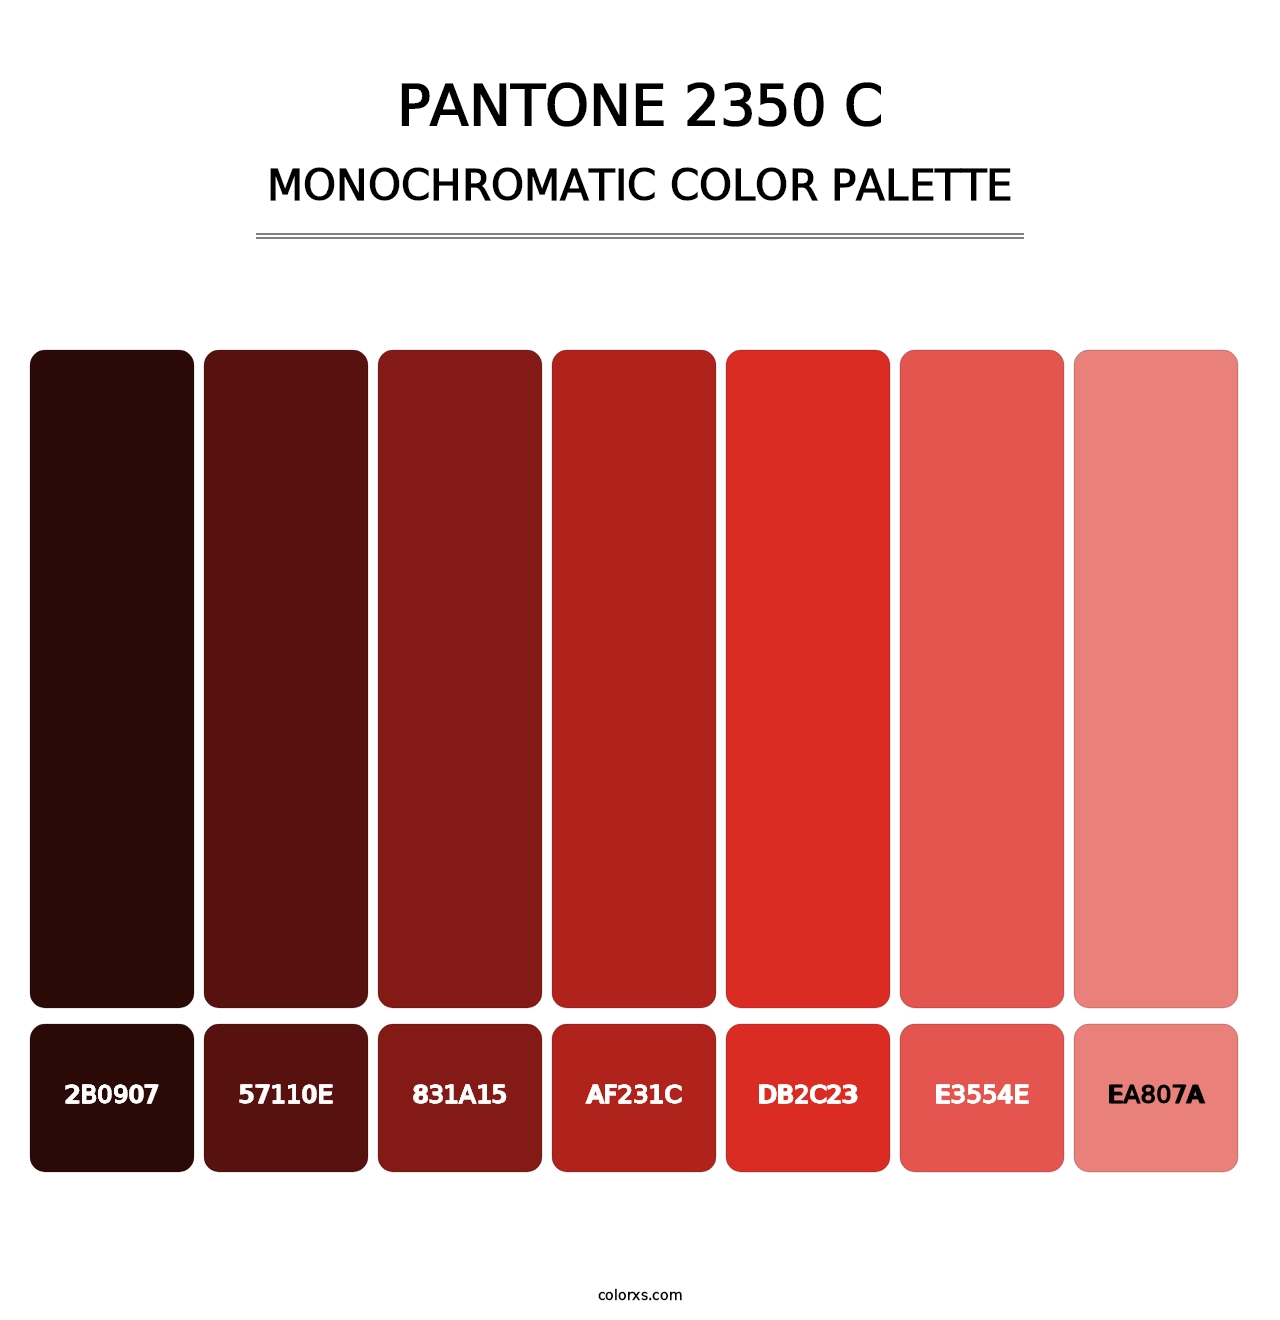 PANTONE 2350 C - Monochromatic Color Palette